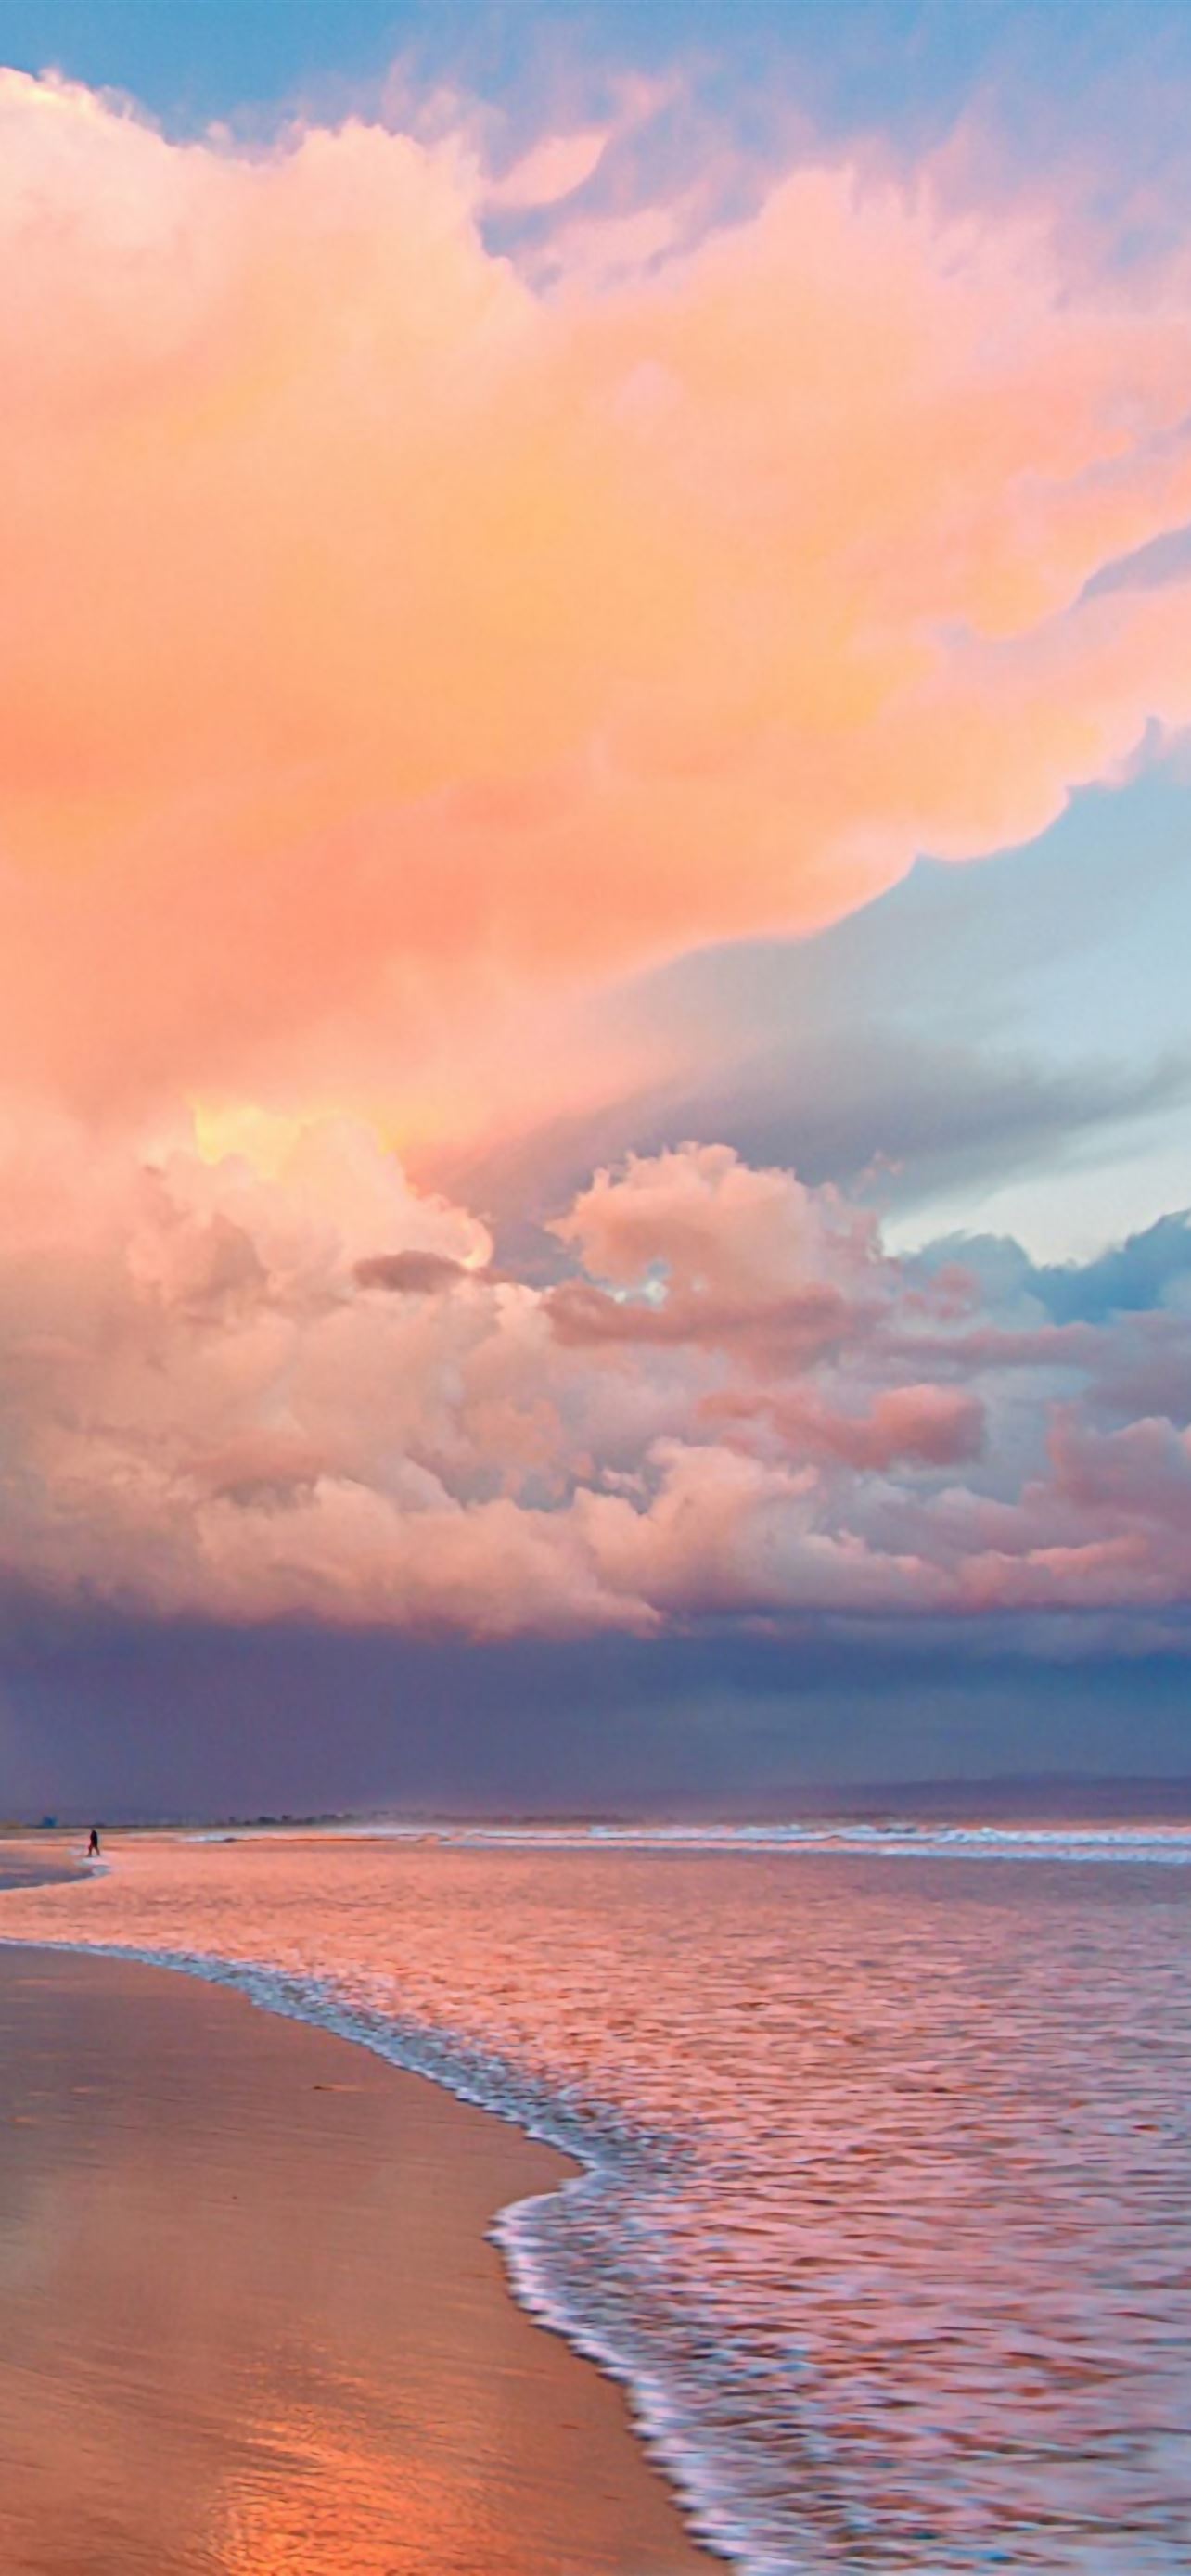 Hình nền bãi biển San Diego cho iPhone: Với hình nền bãi biển San Diego, bạn sẽ được trải nghiệm không gian tuyệt vời của thiên nhiên và cảm nhận được gió biển thổi qua mái tóc mình. Hình nền sẽ làm cho màn hình iPhone của bạn trở nên lung linh hơn, đem lại cho bạn sự thoải mái và thư giãn sau những giờ làm việc căng thẳng.